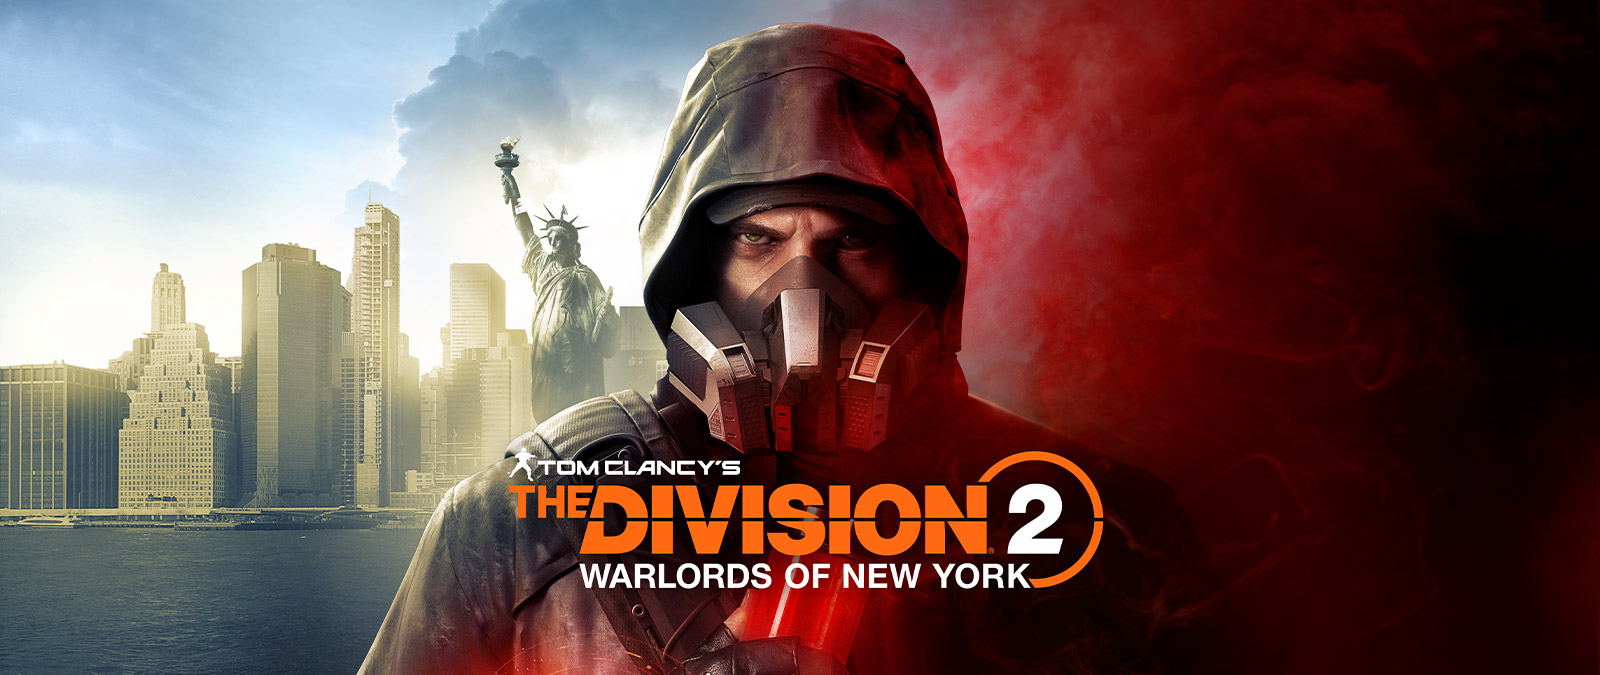 Tom Clancy’s The Division 2 Warlords of New York, Aaron Keener usando uma máscara de gás em frente à Estátua da Liberdade